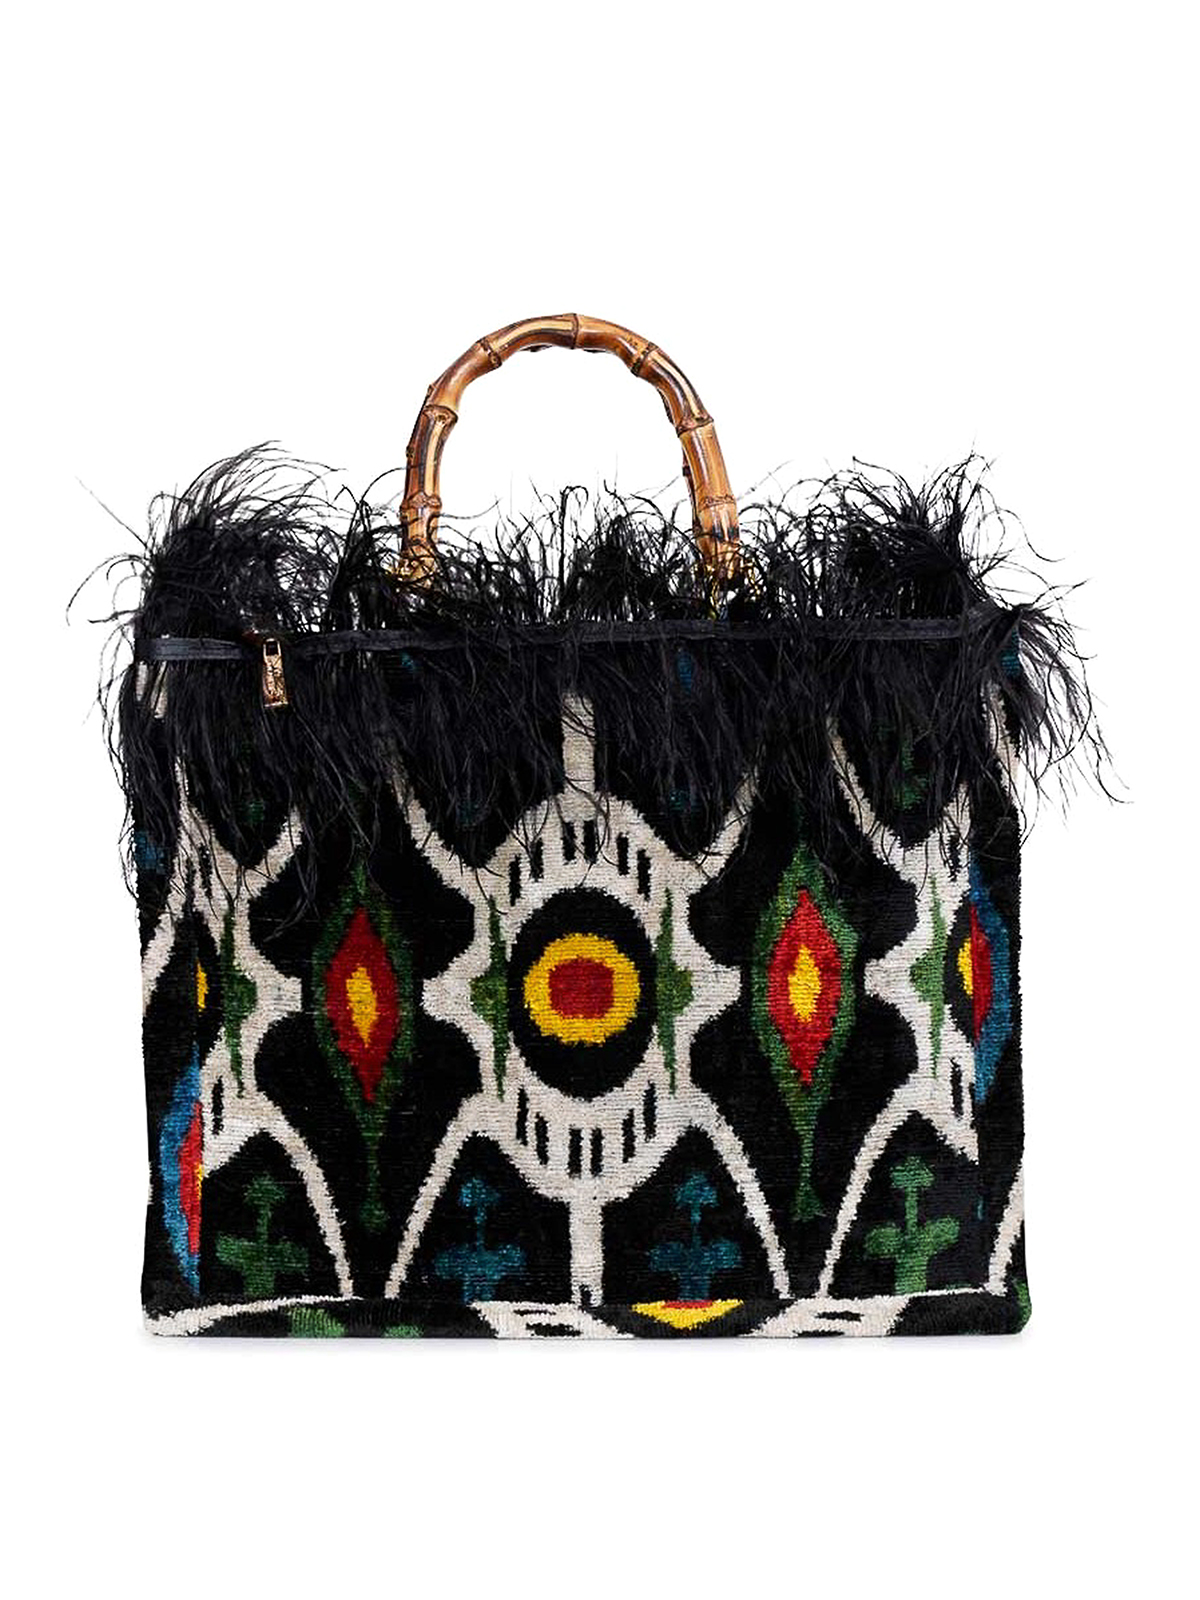 Totes bags La Milanesa - Asena large bag - ASELN | Shop online at iKRIX